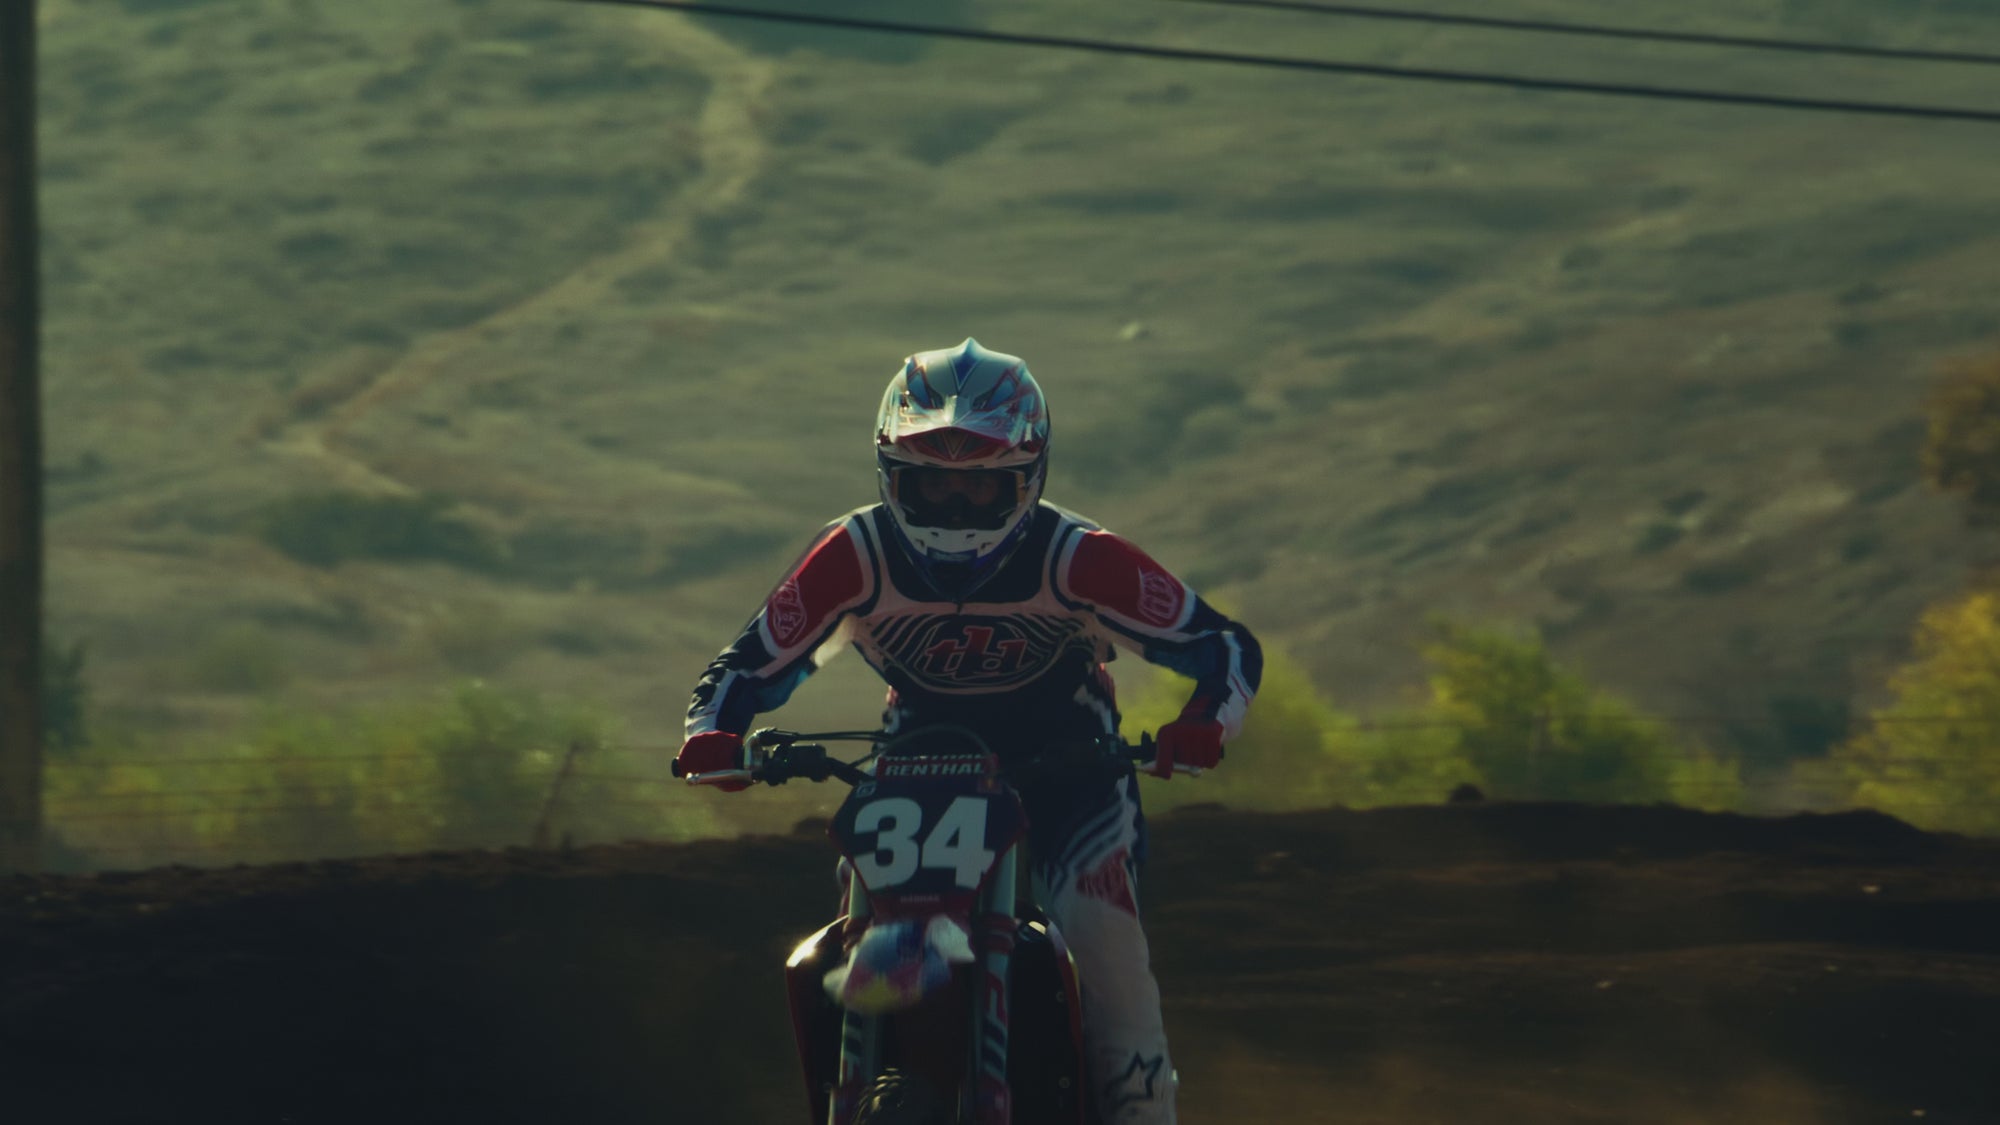 Spring 24 Moto Gear highlight video